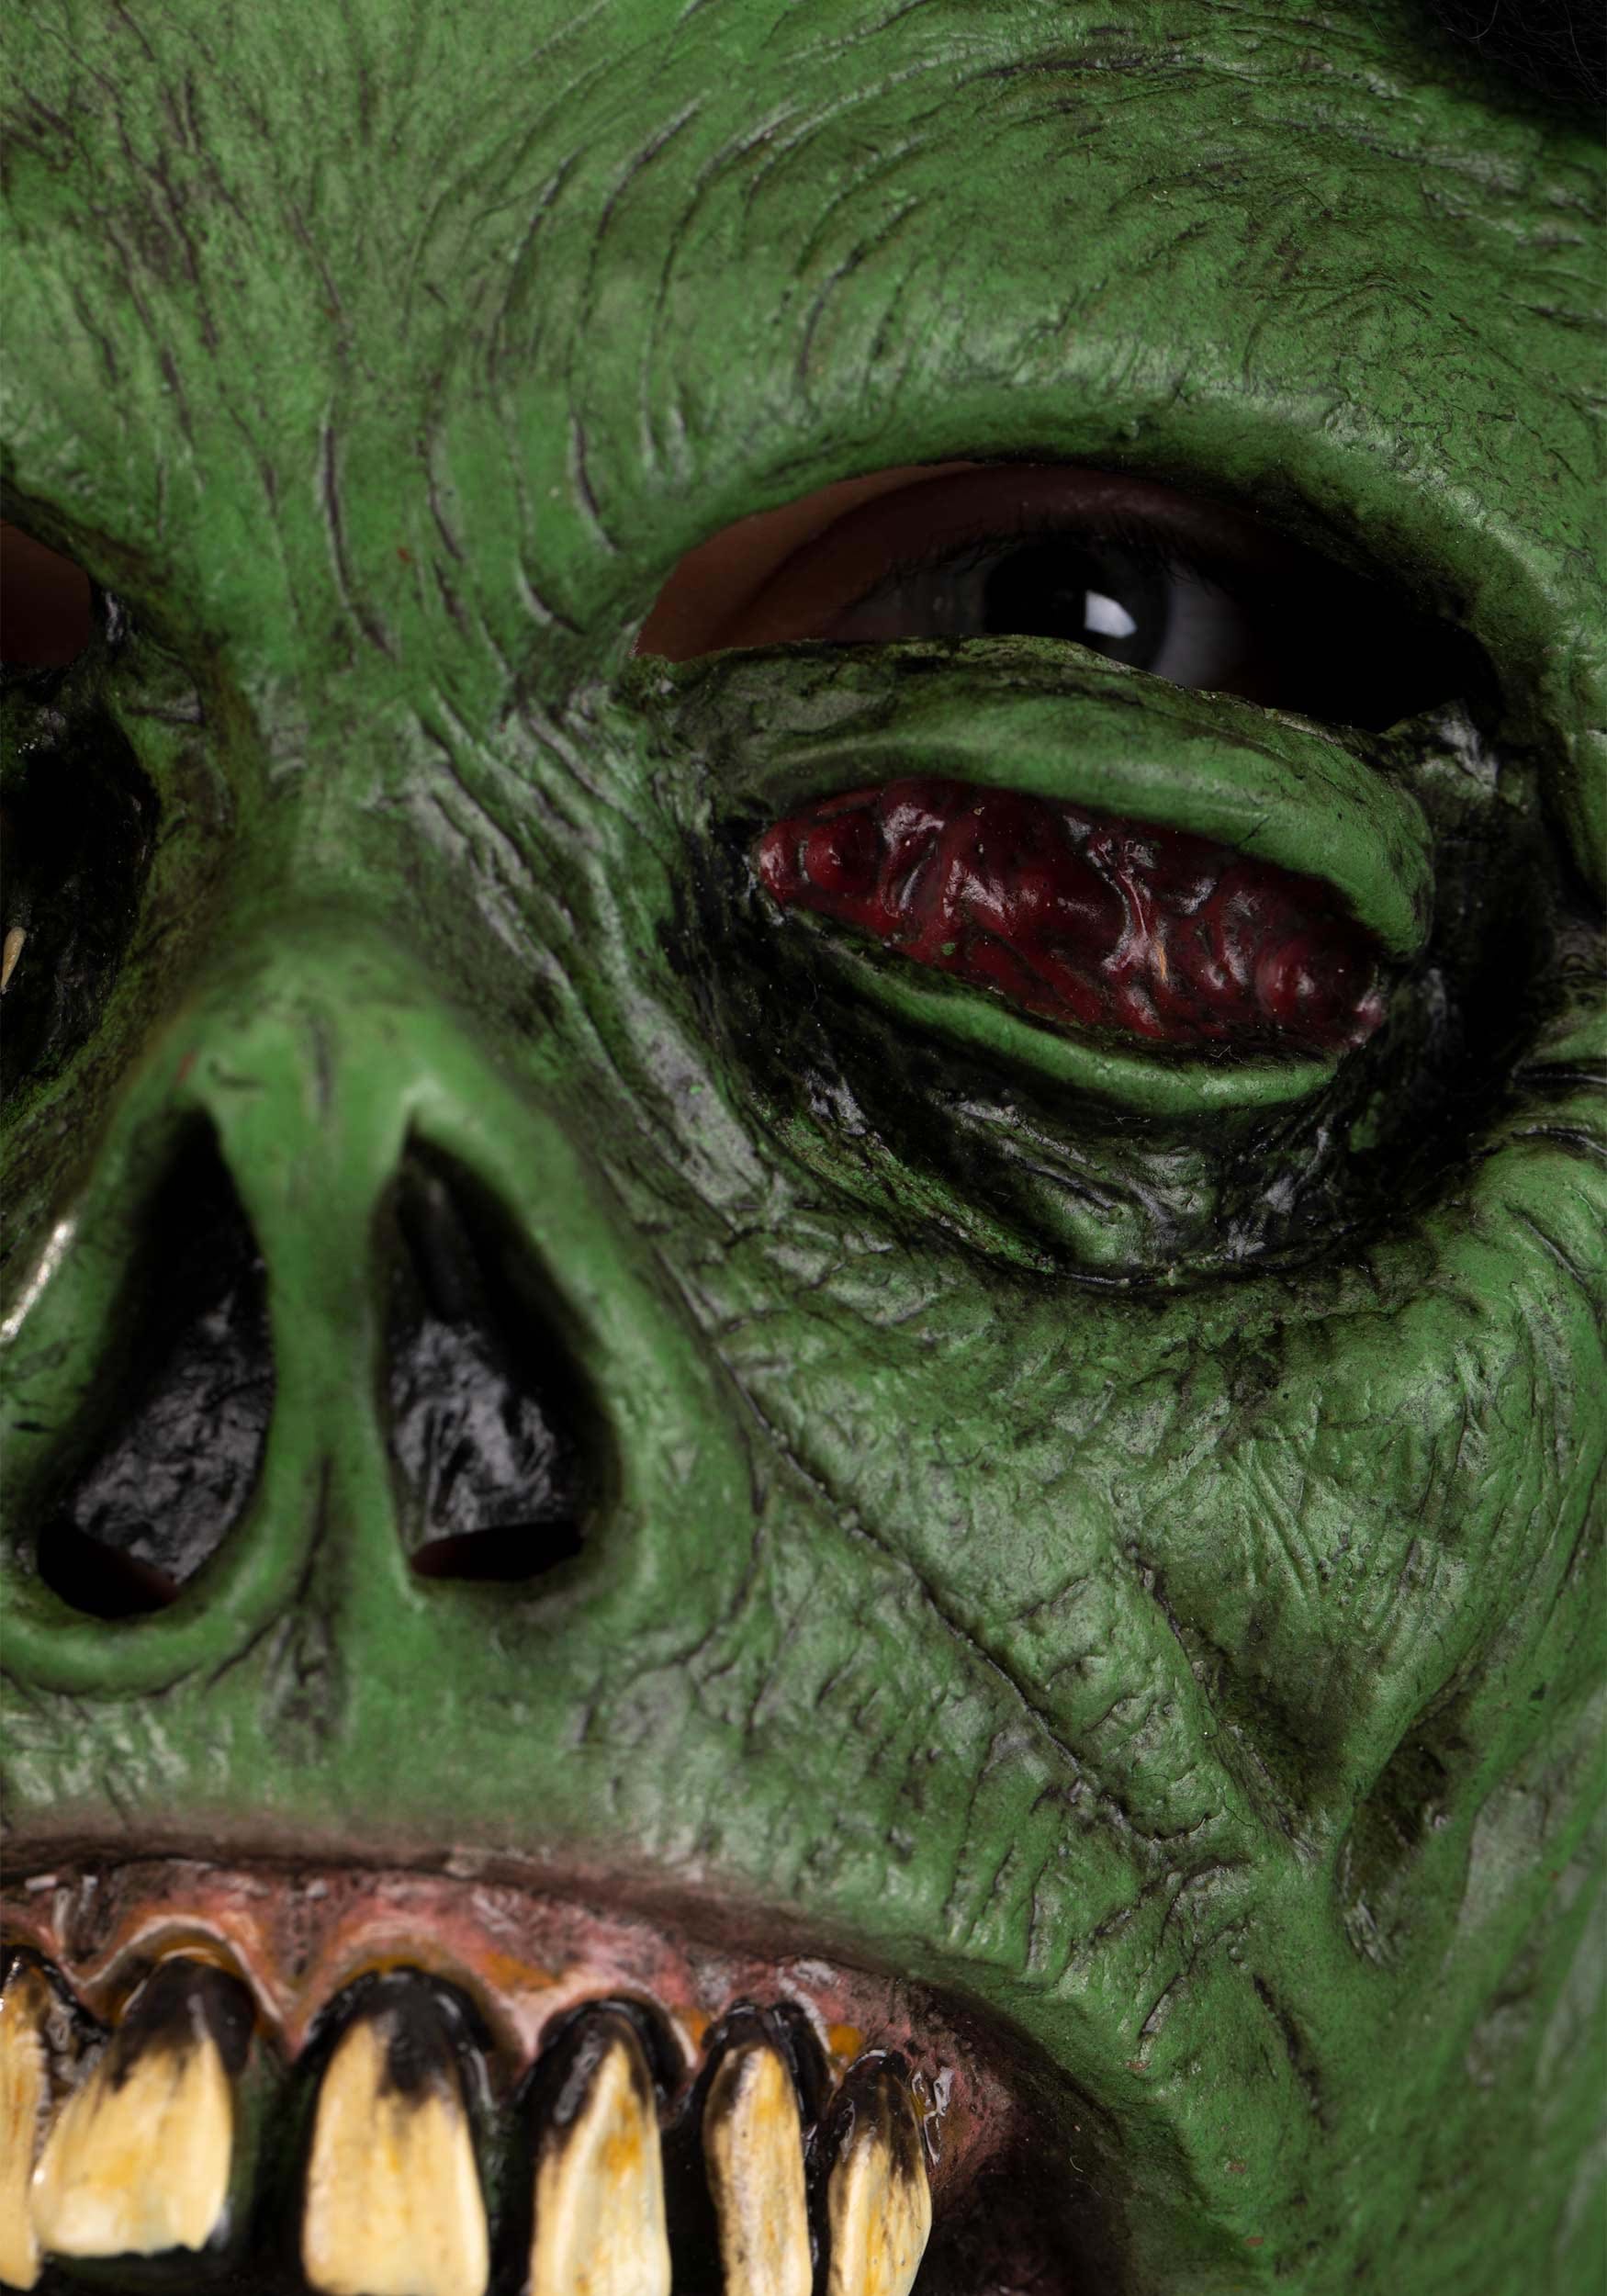 Adult Green Monster Full Face Mask